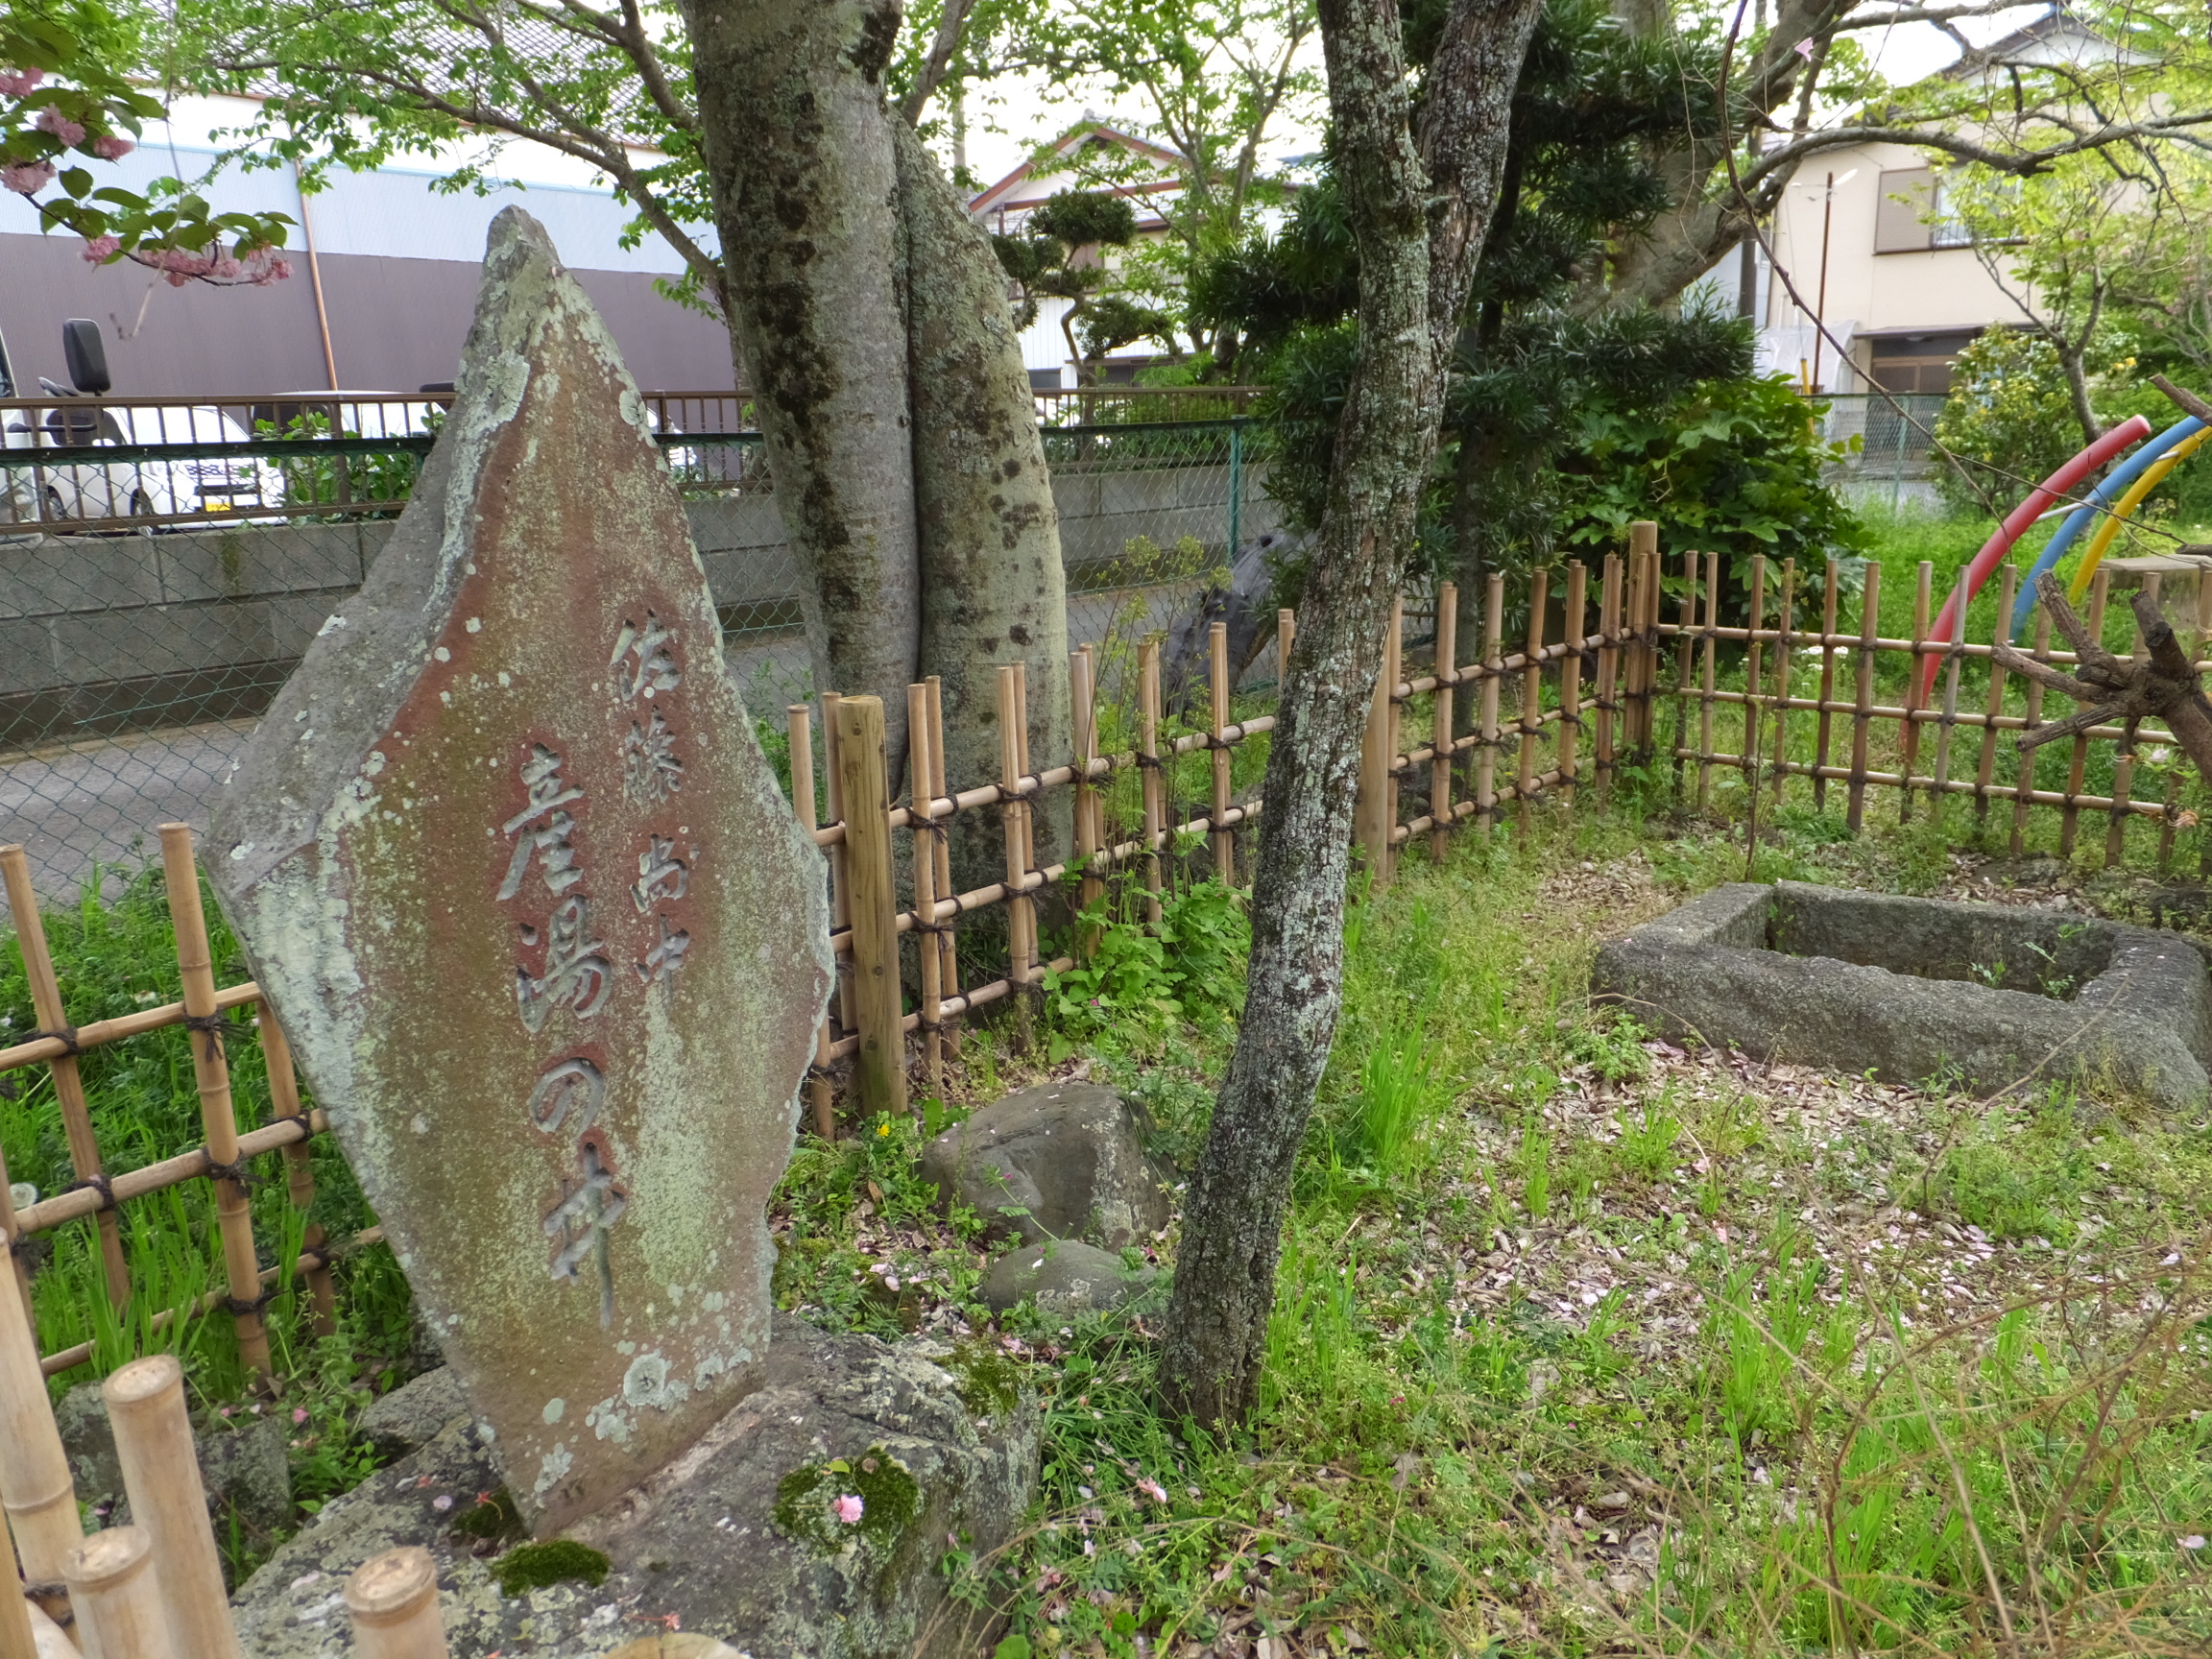 สถานที่เกิดของทาดาทากะ ซาโตะ